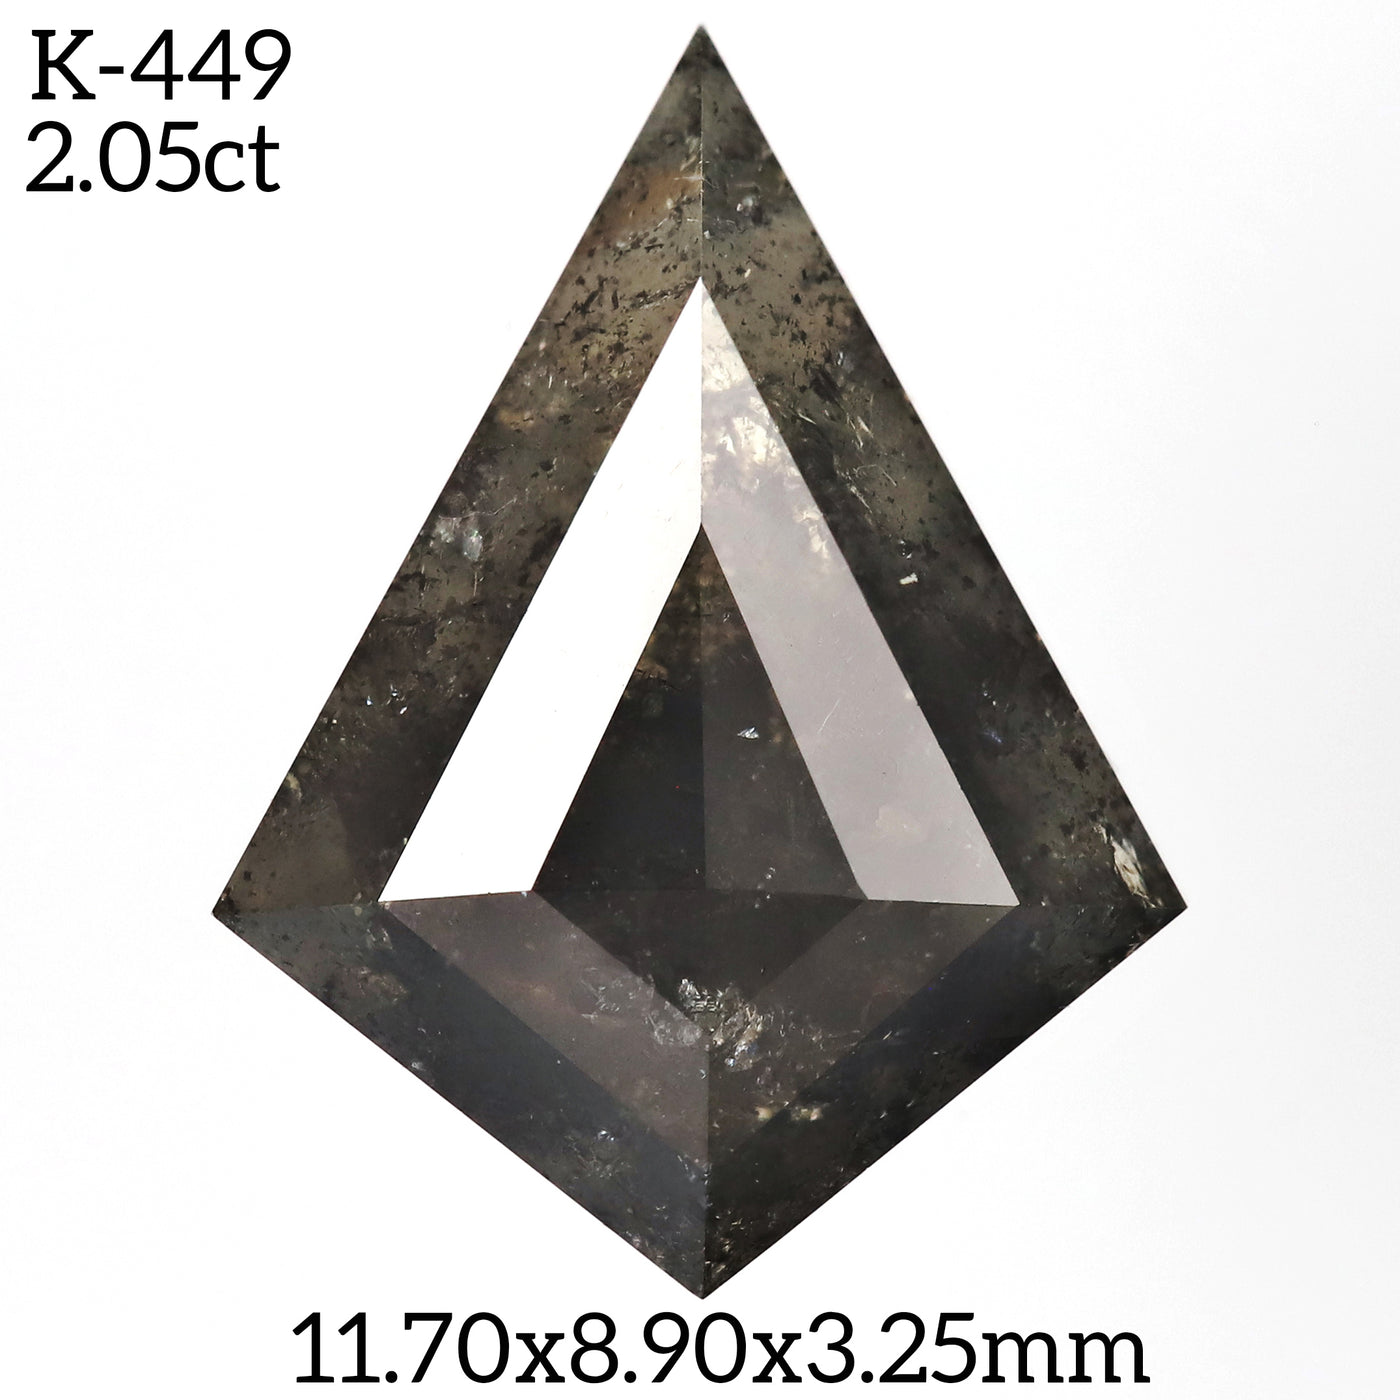 K449 - Salt and pepper kite diamond